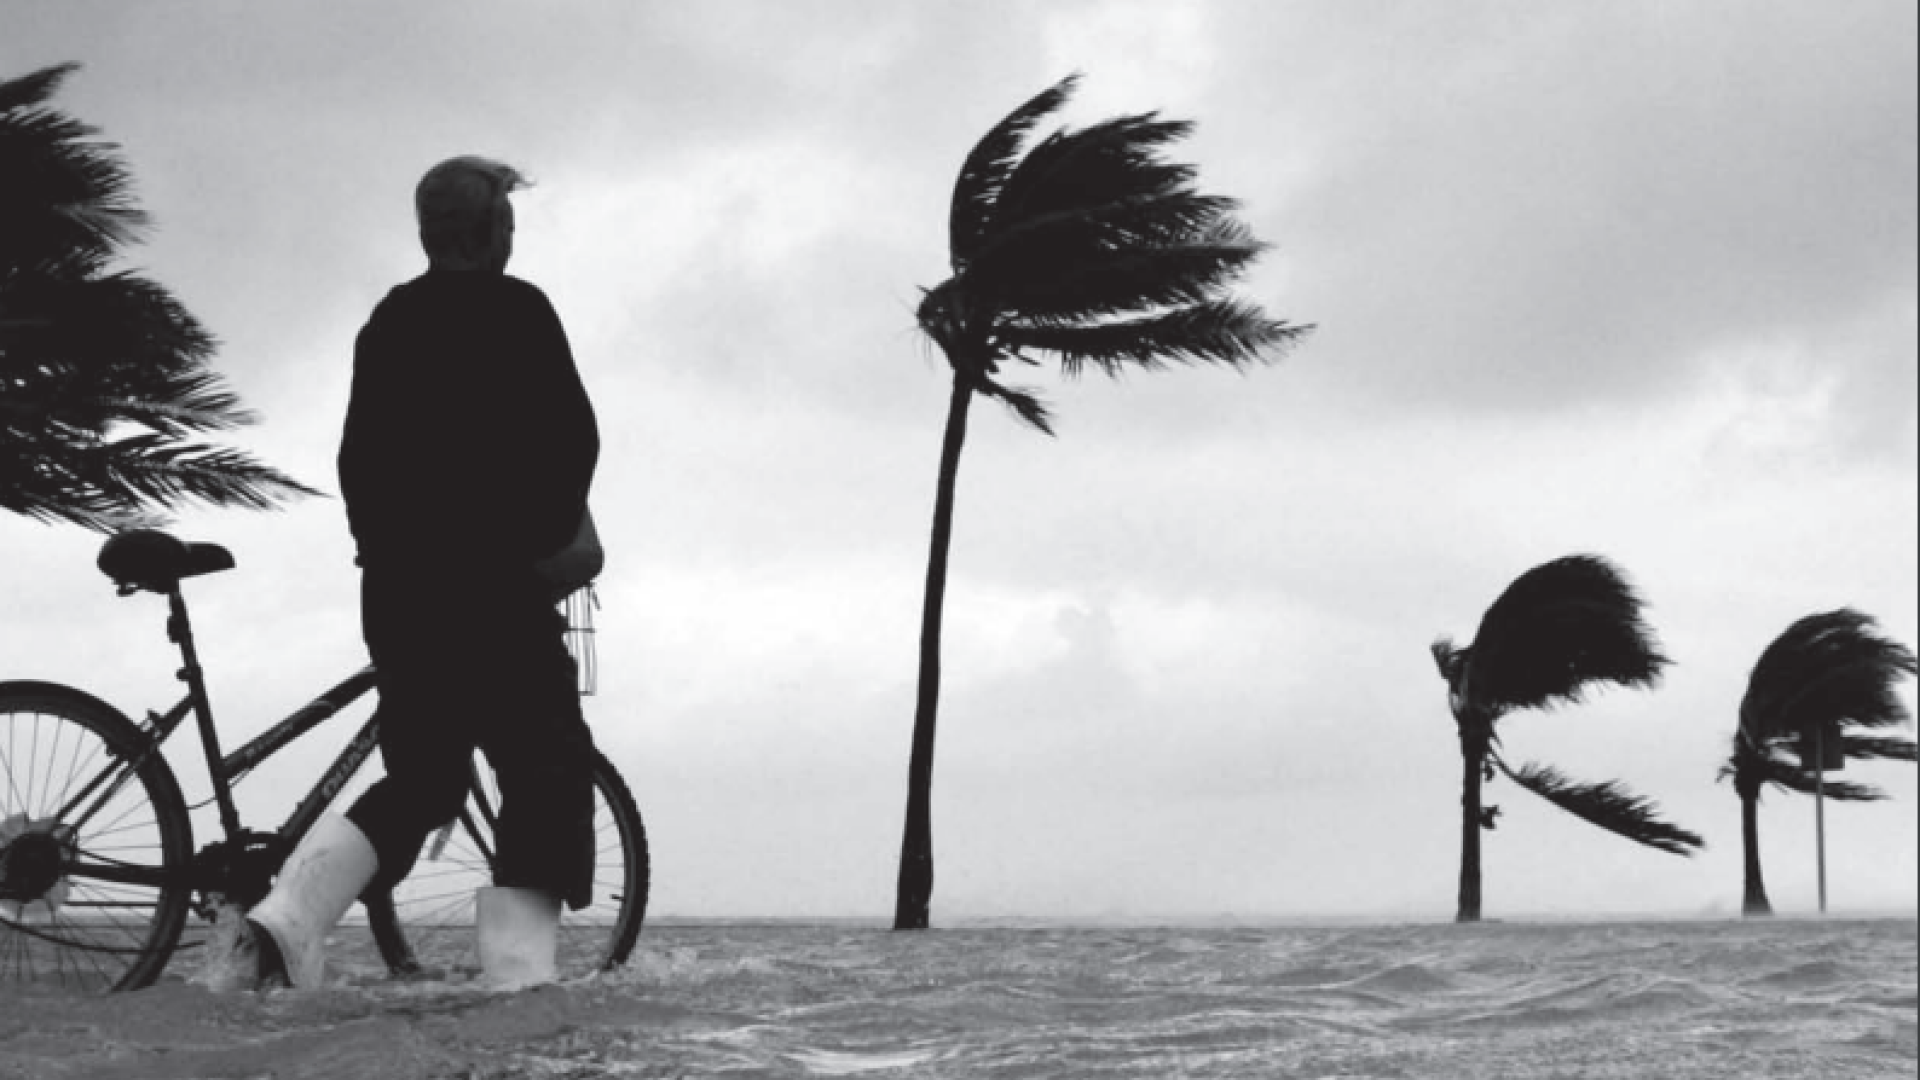 A person walking their bike through flood waters in tropical climbs